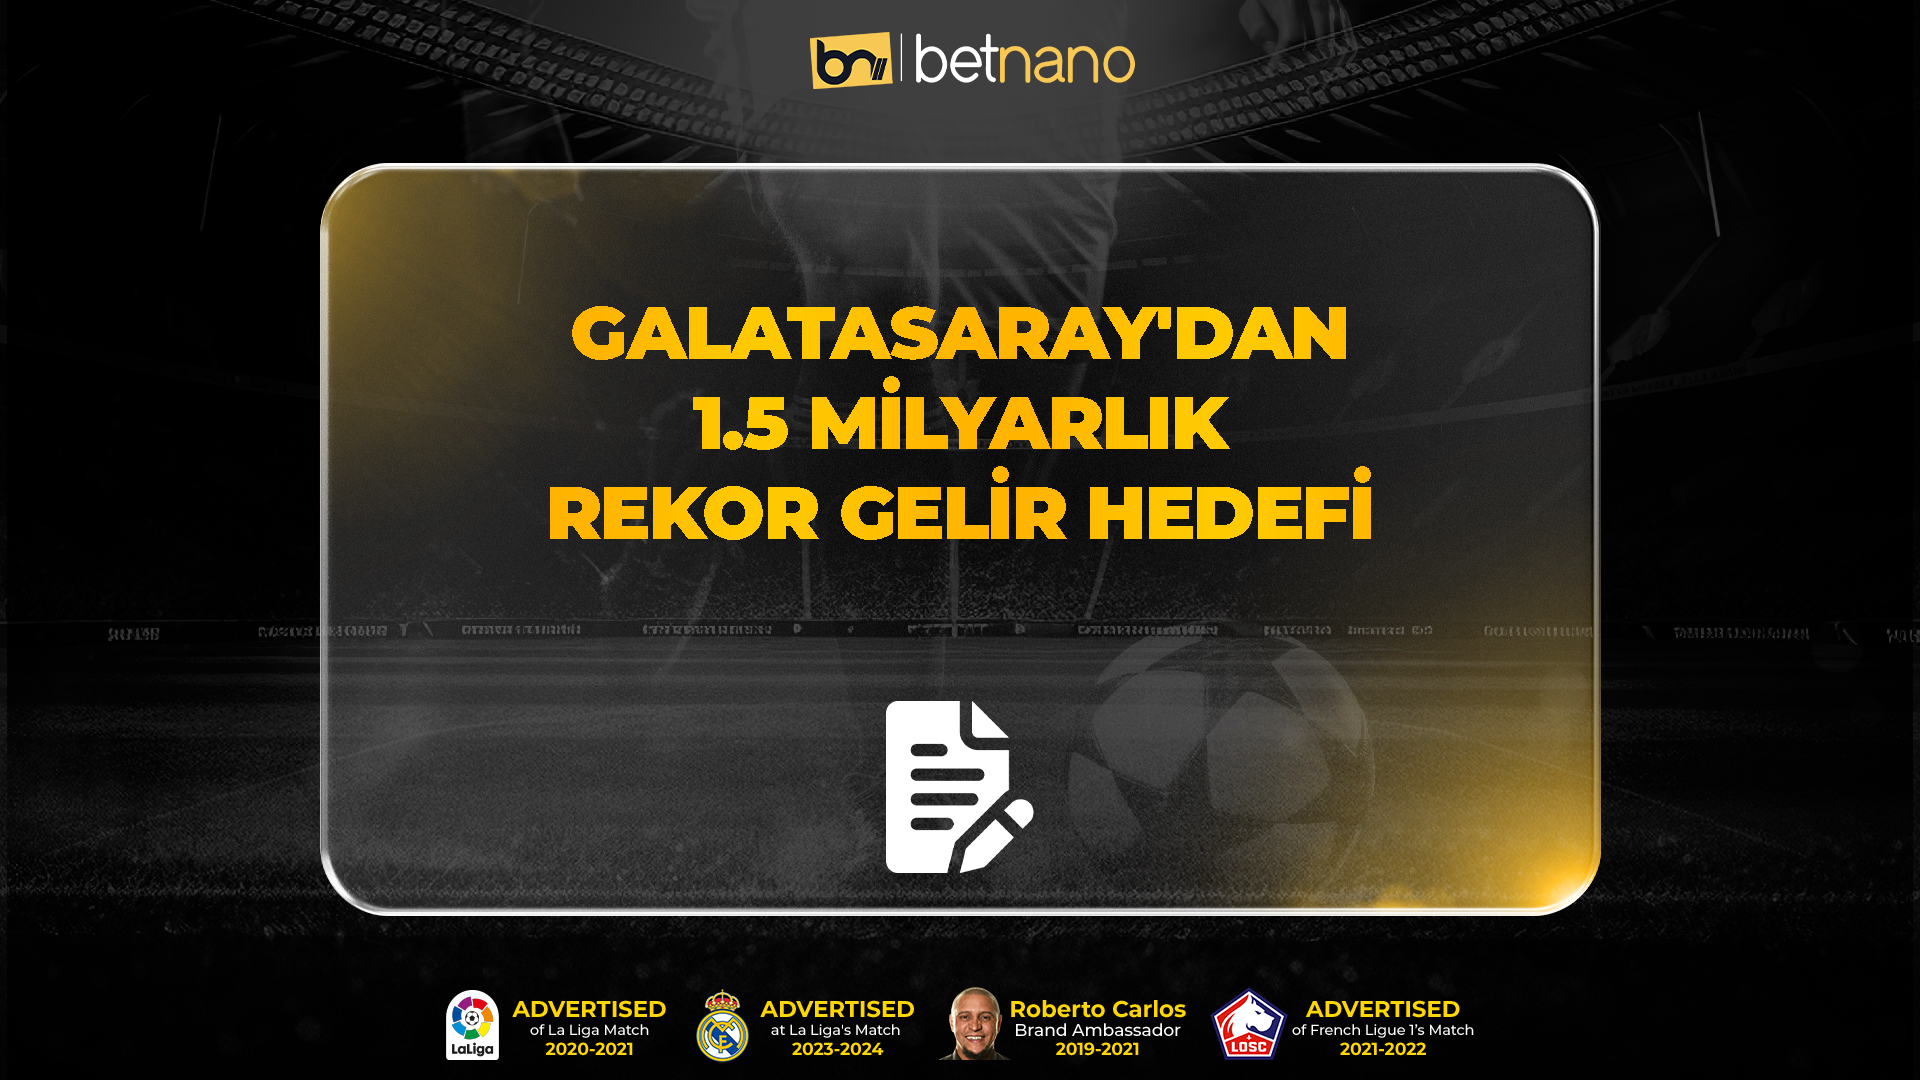 Galatasaray'dan 1.5 milyarlık rekor gelir hedefi